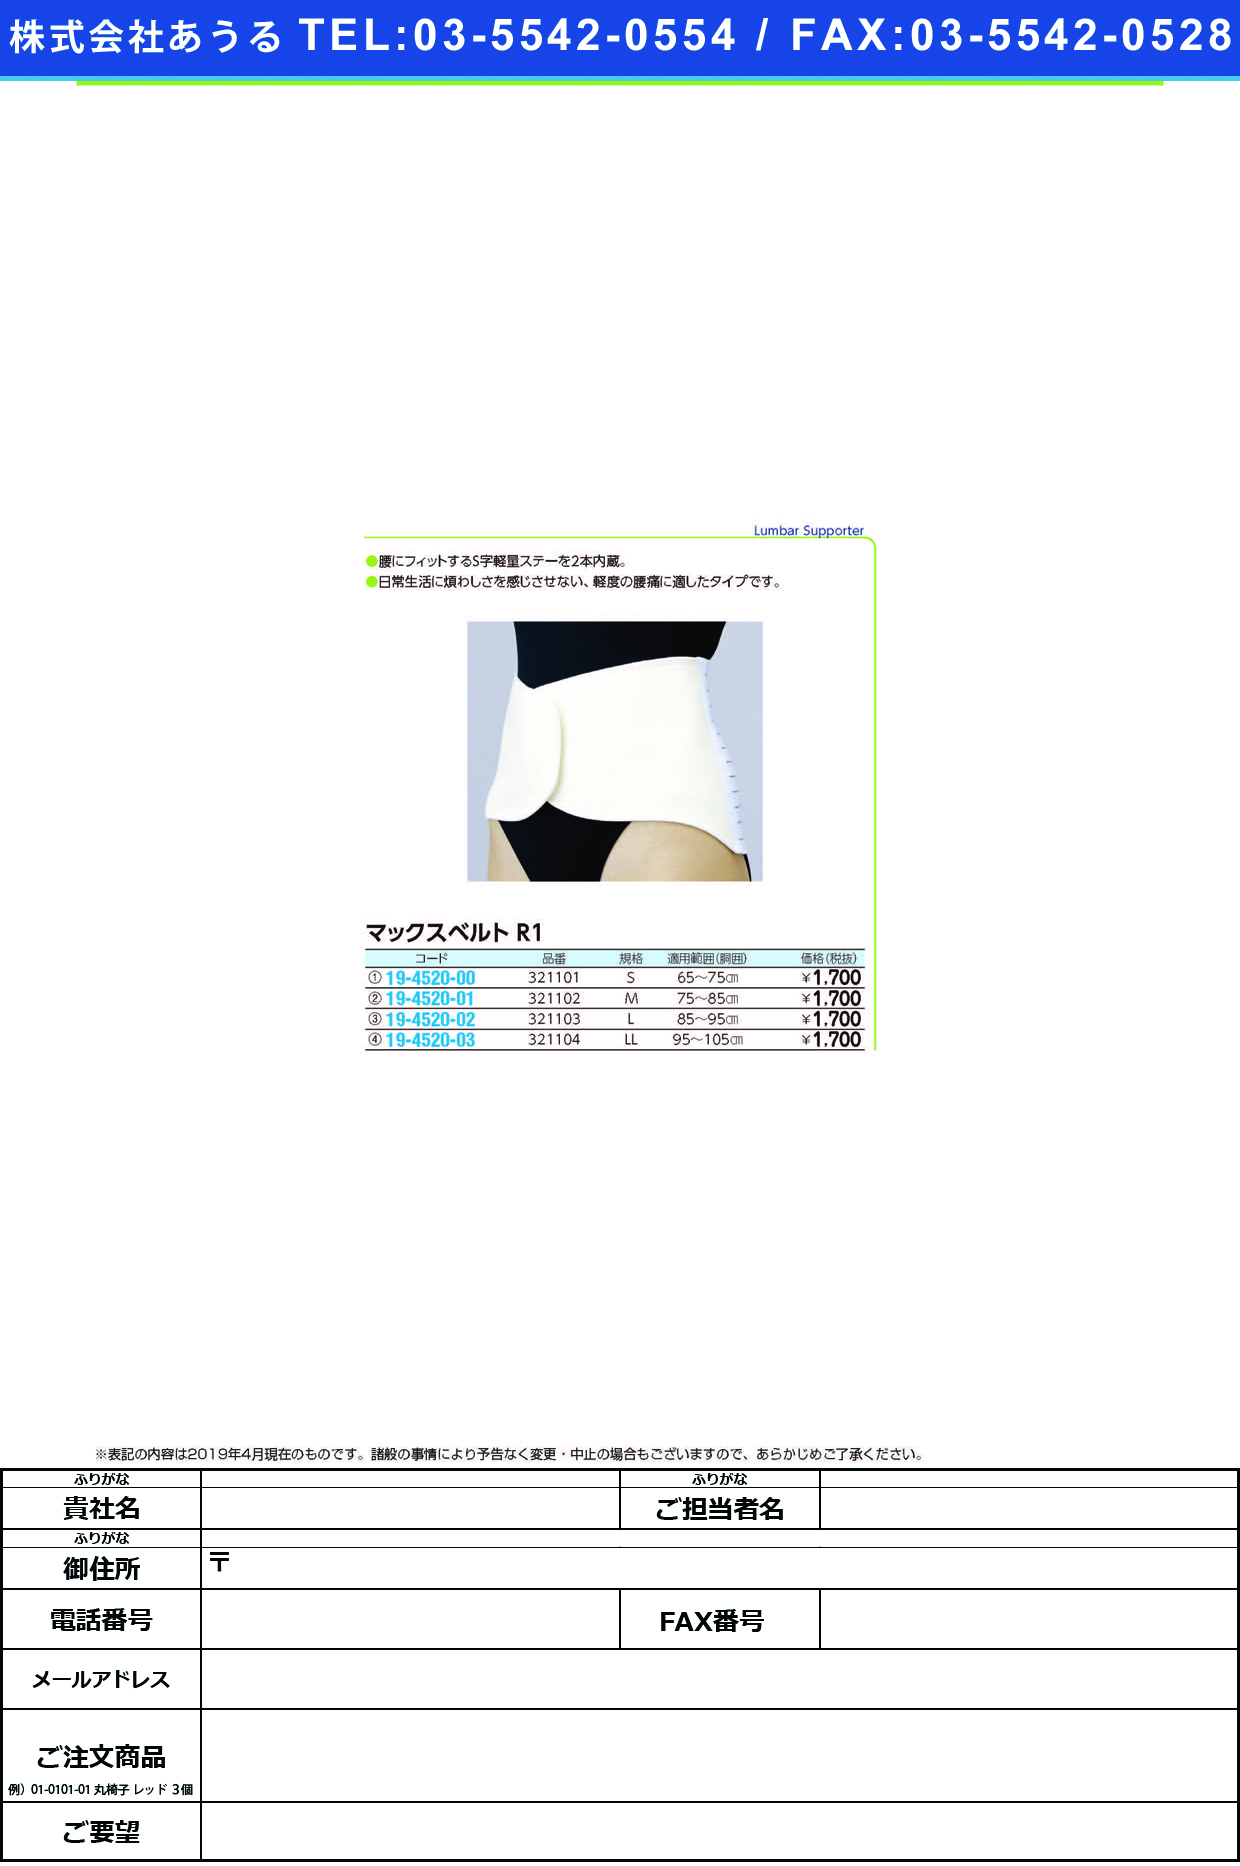 (19-4520-02)マックスベルトＲ１ 321103(L) ﾏｯｸｽﾍﾞﾙﾄR1(日本シグマックス)【1個単位】【2019年カタログ商品】